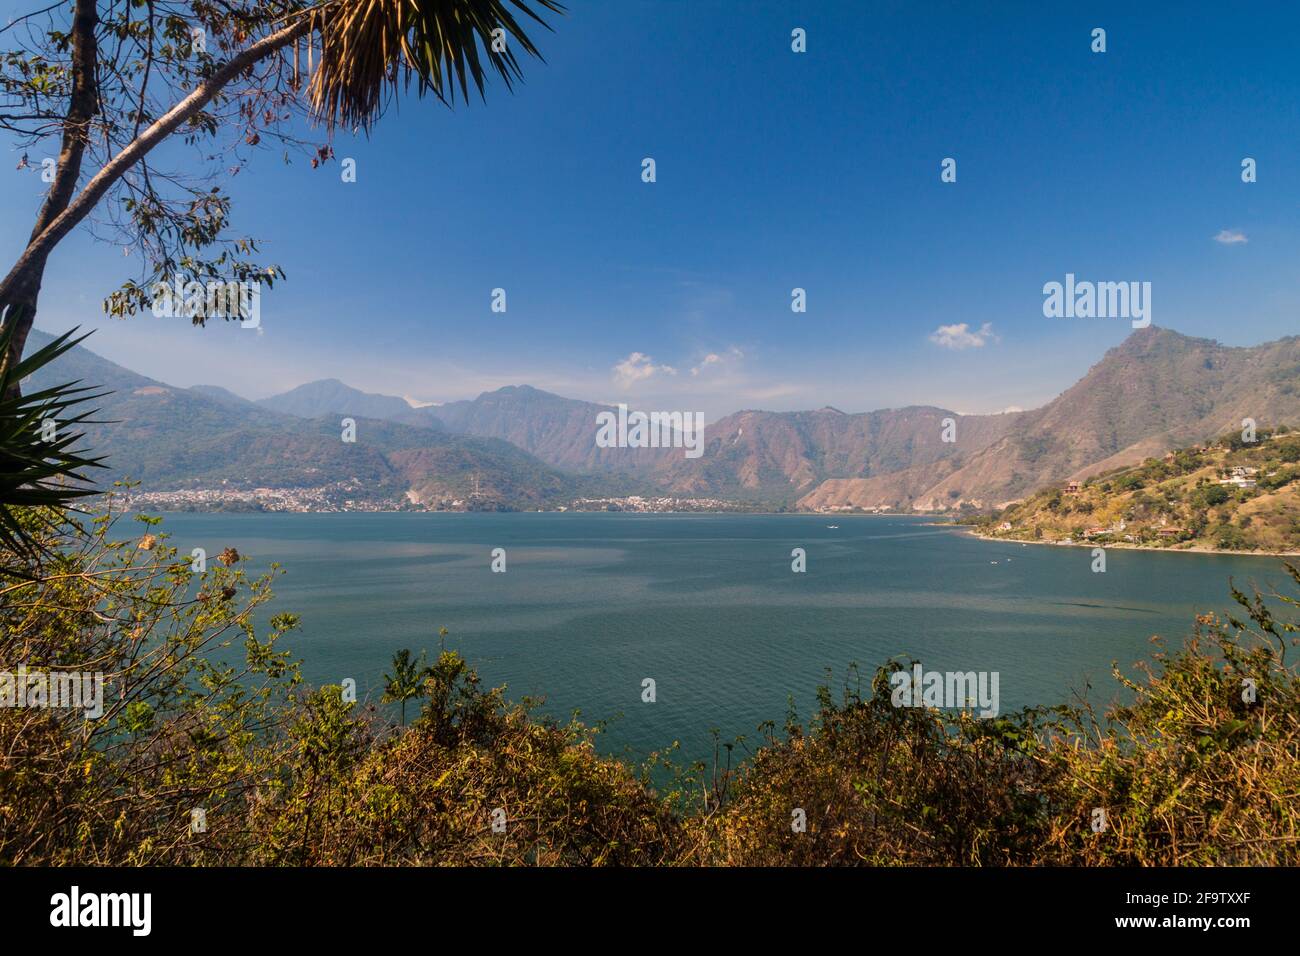 Atitlan lake and surrounding hills, Guatemala Stock Photo